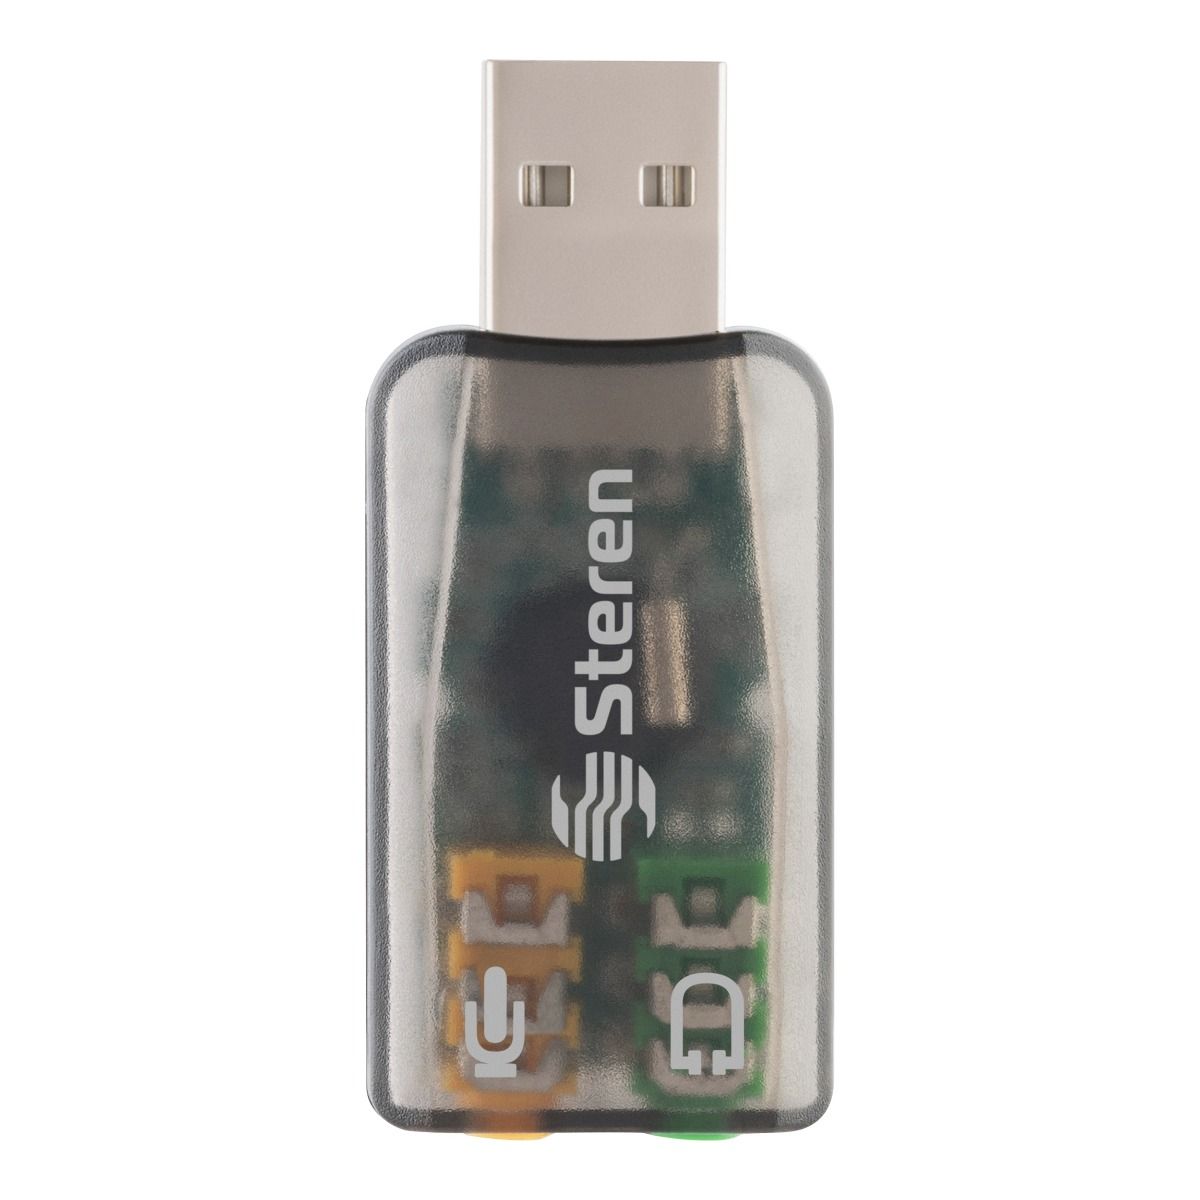 Comprar Tarjeta de sonido externa GS3 USB 2.0 Adaptador de tarjeta